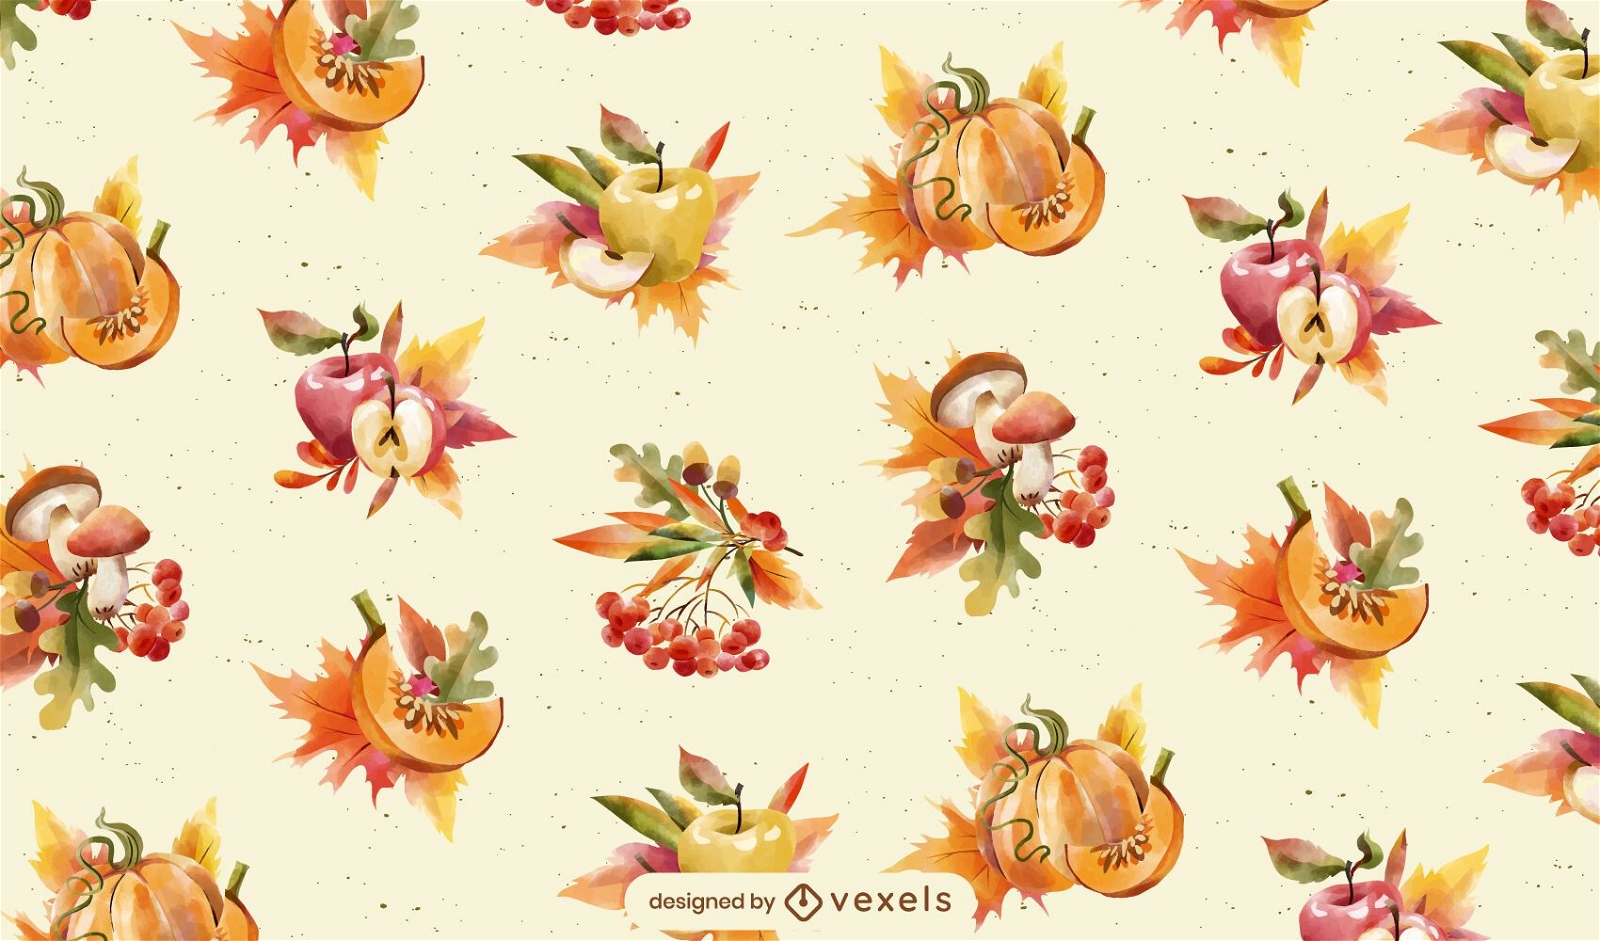 Autumn season food pattern design